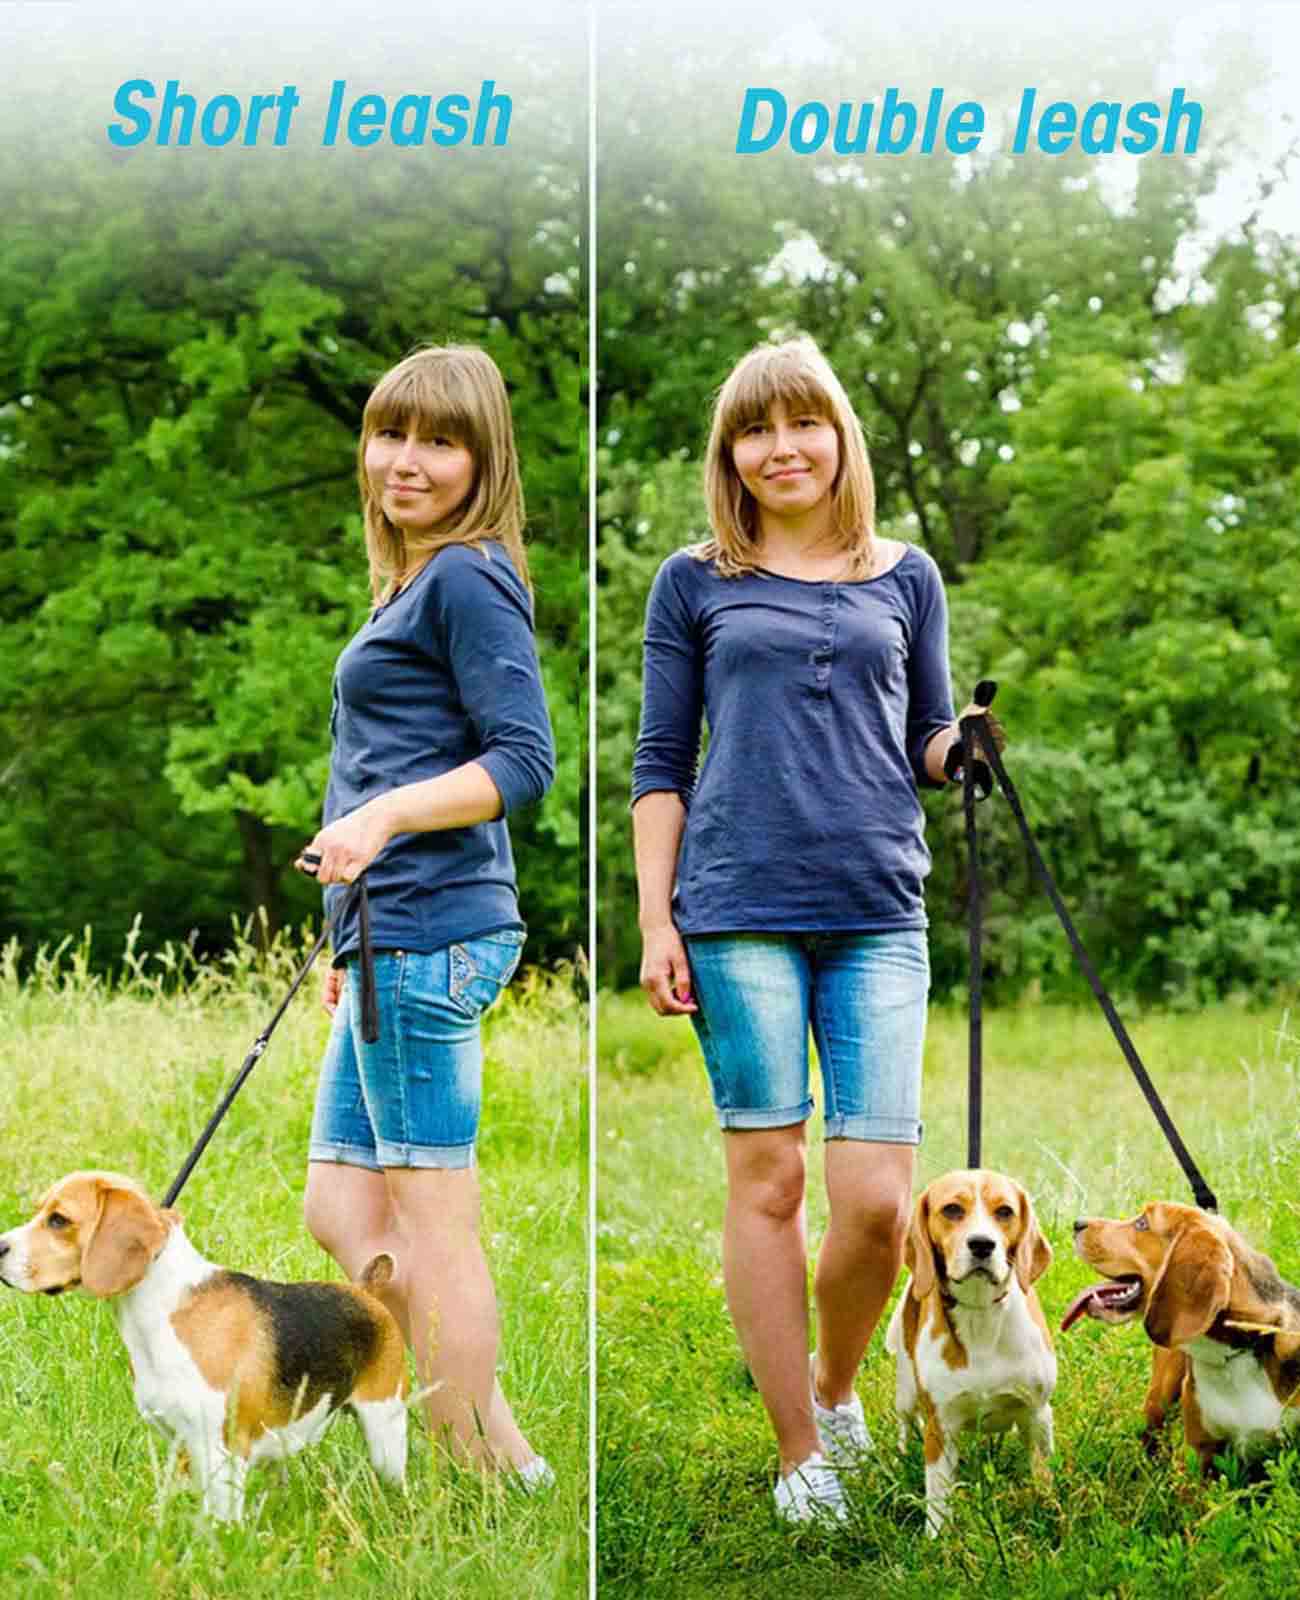 
                  
                    Oneisall freihändige Hundeleine, multifunktionale Hundetrainingsleine, 8-Fuß-Nylon-Doppelleine für Welpen, kleine und große Hunde
                  
                